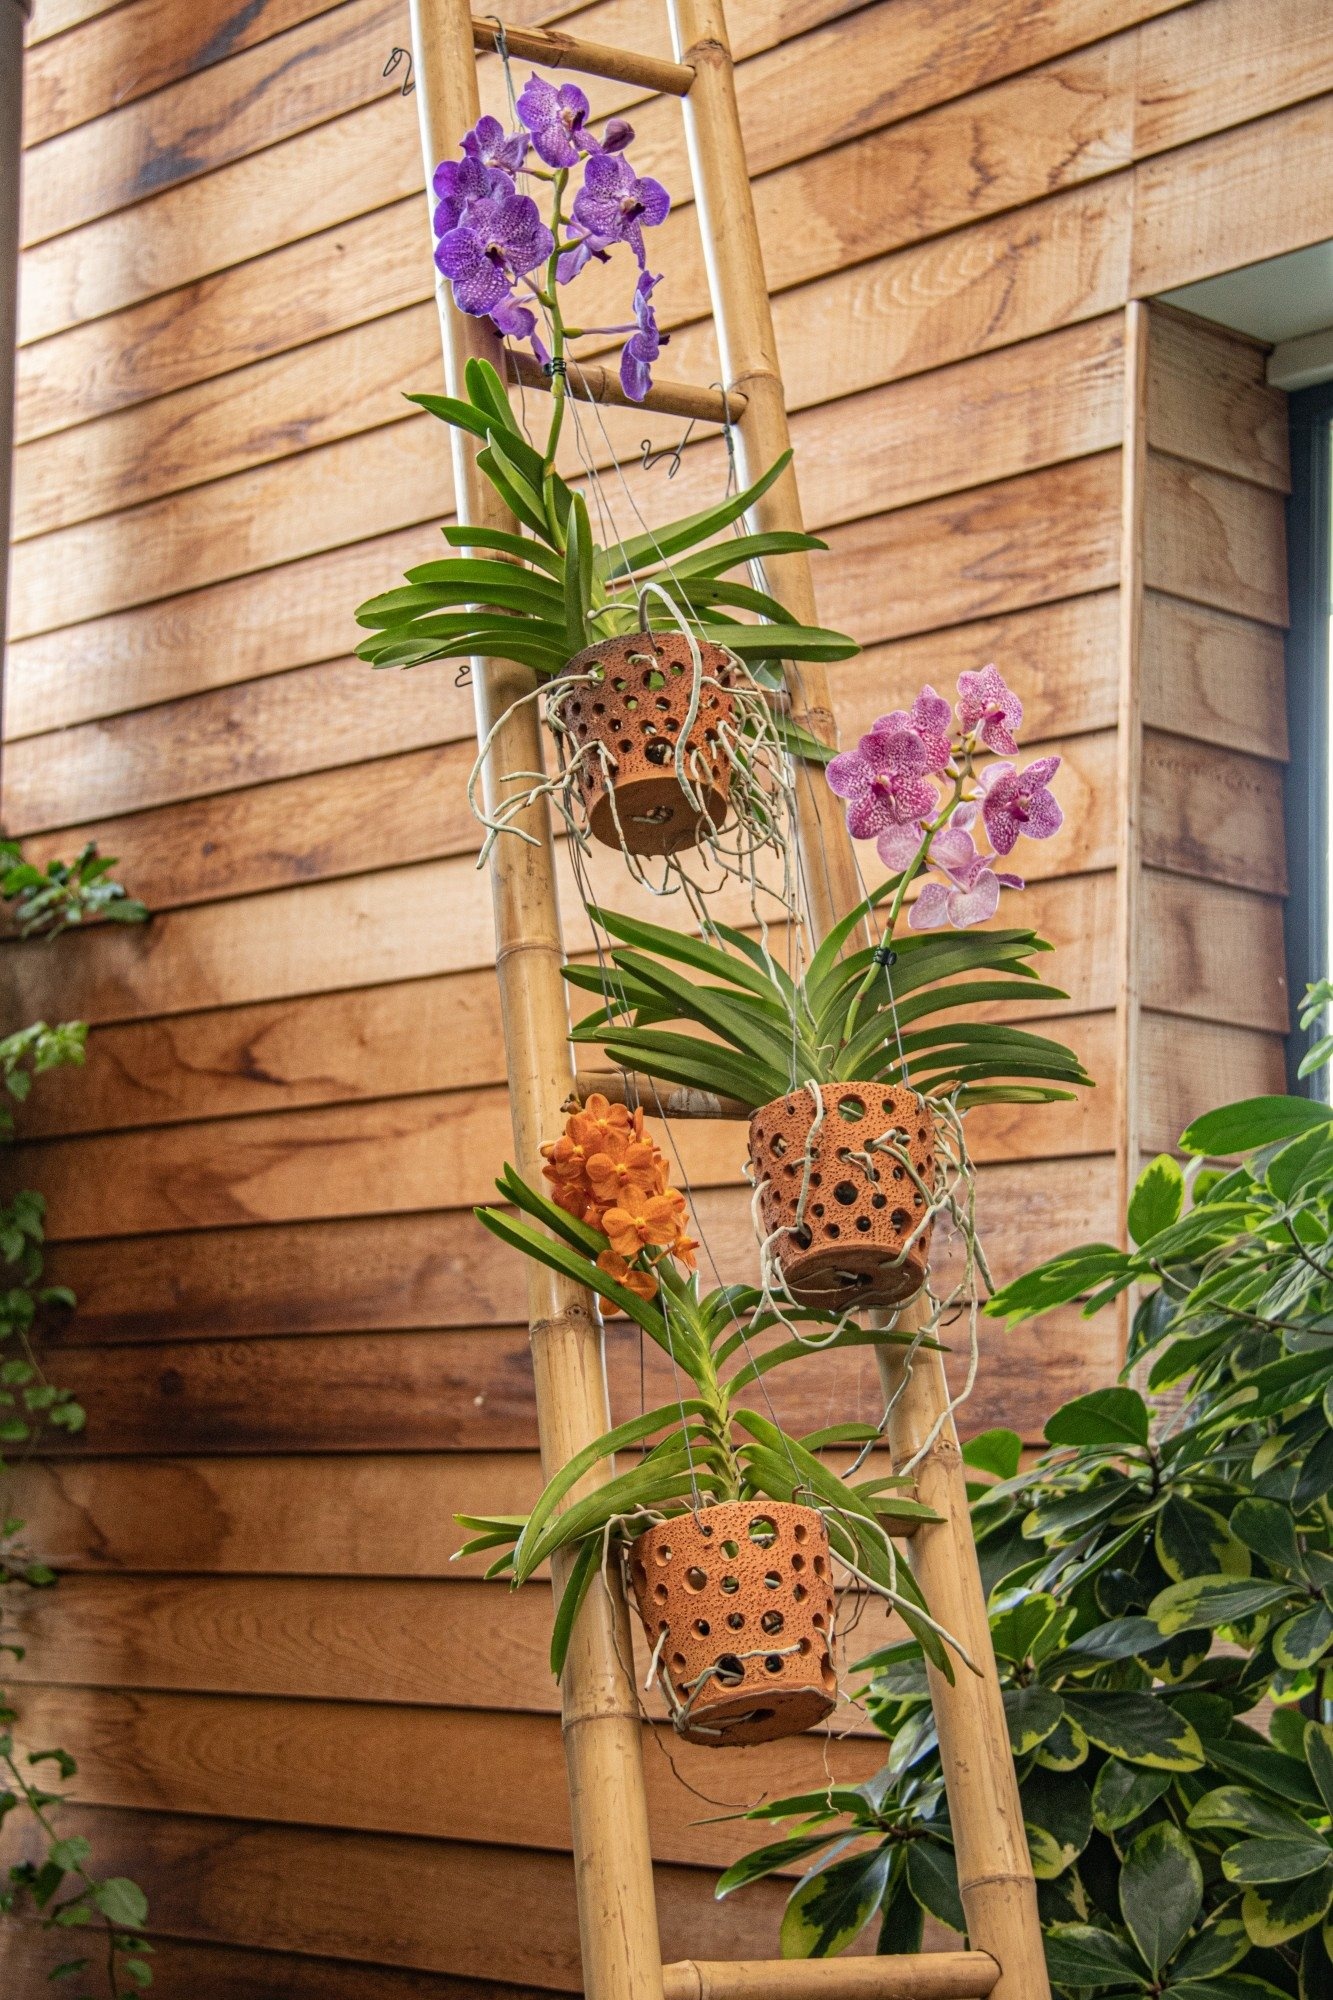 Vanda Botanica in Vaso pensile in terracotta - FloraStore